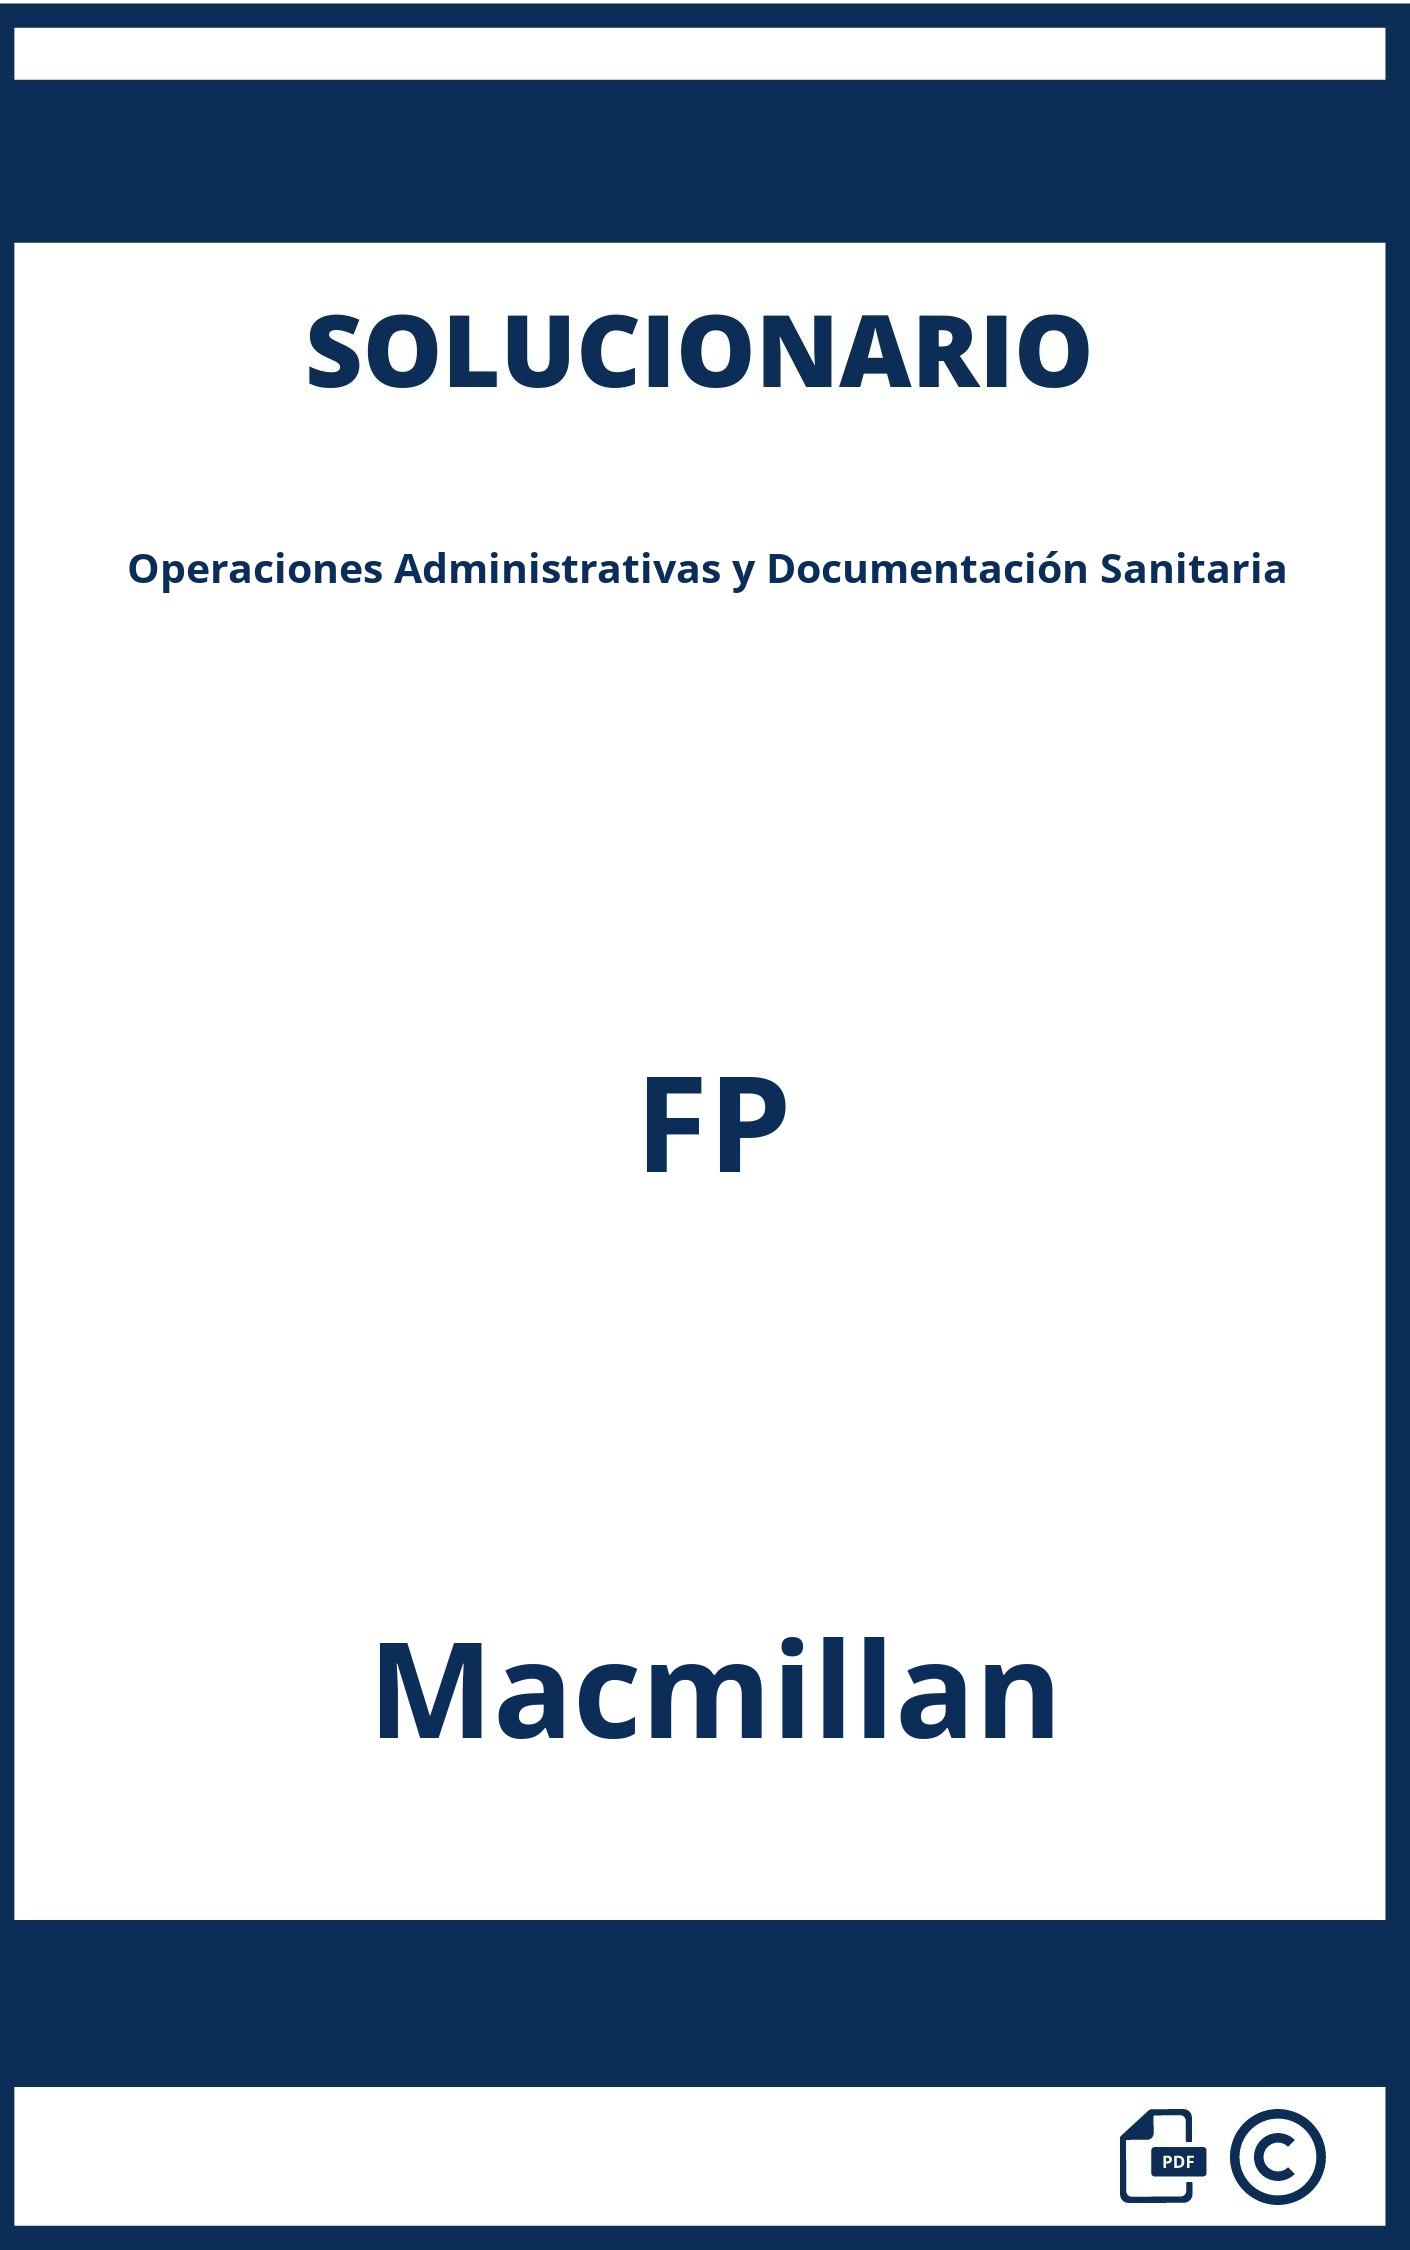 Solucionario Operaciones Administrativas y Documentación Sanitaria FP Macmillan